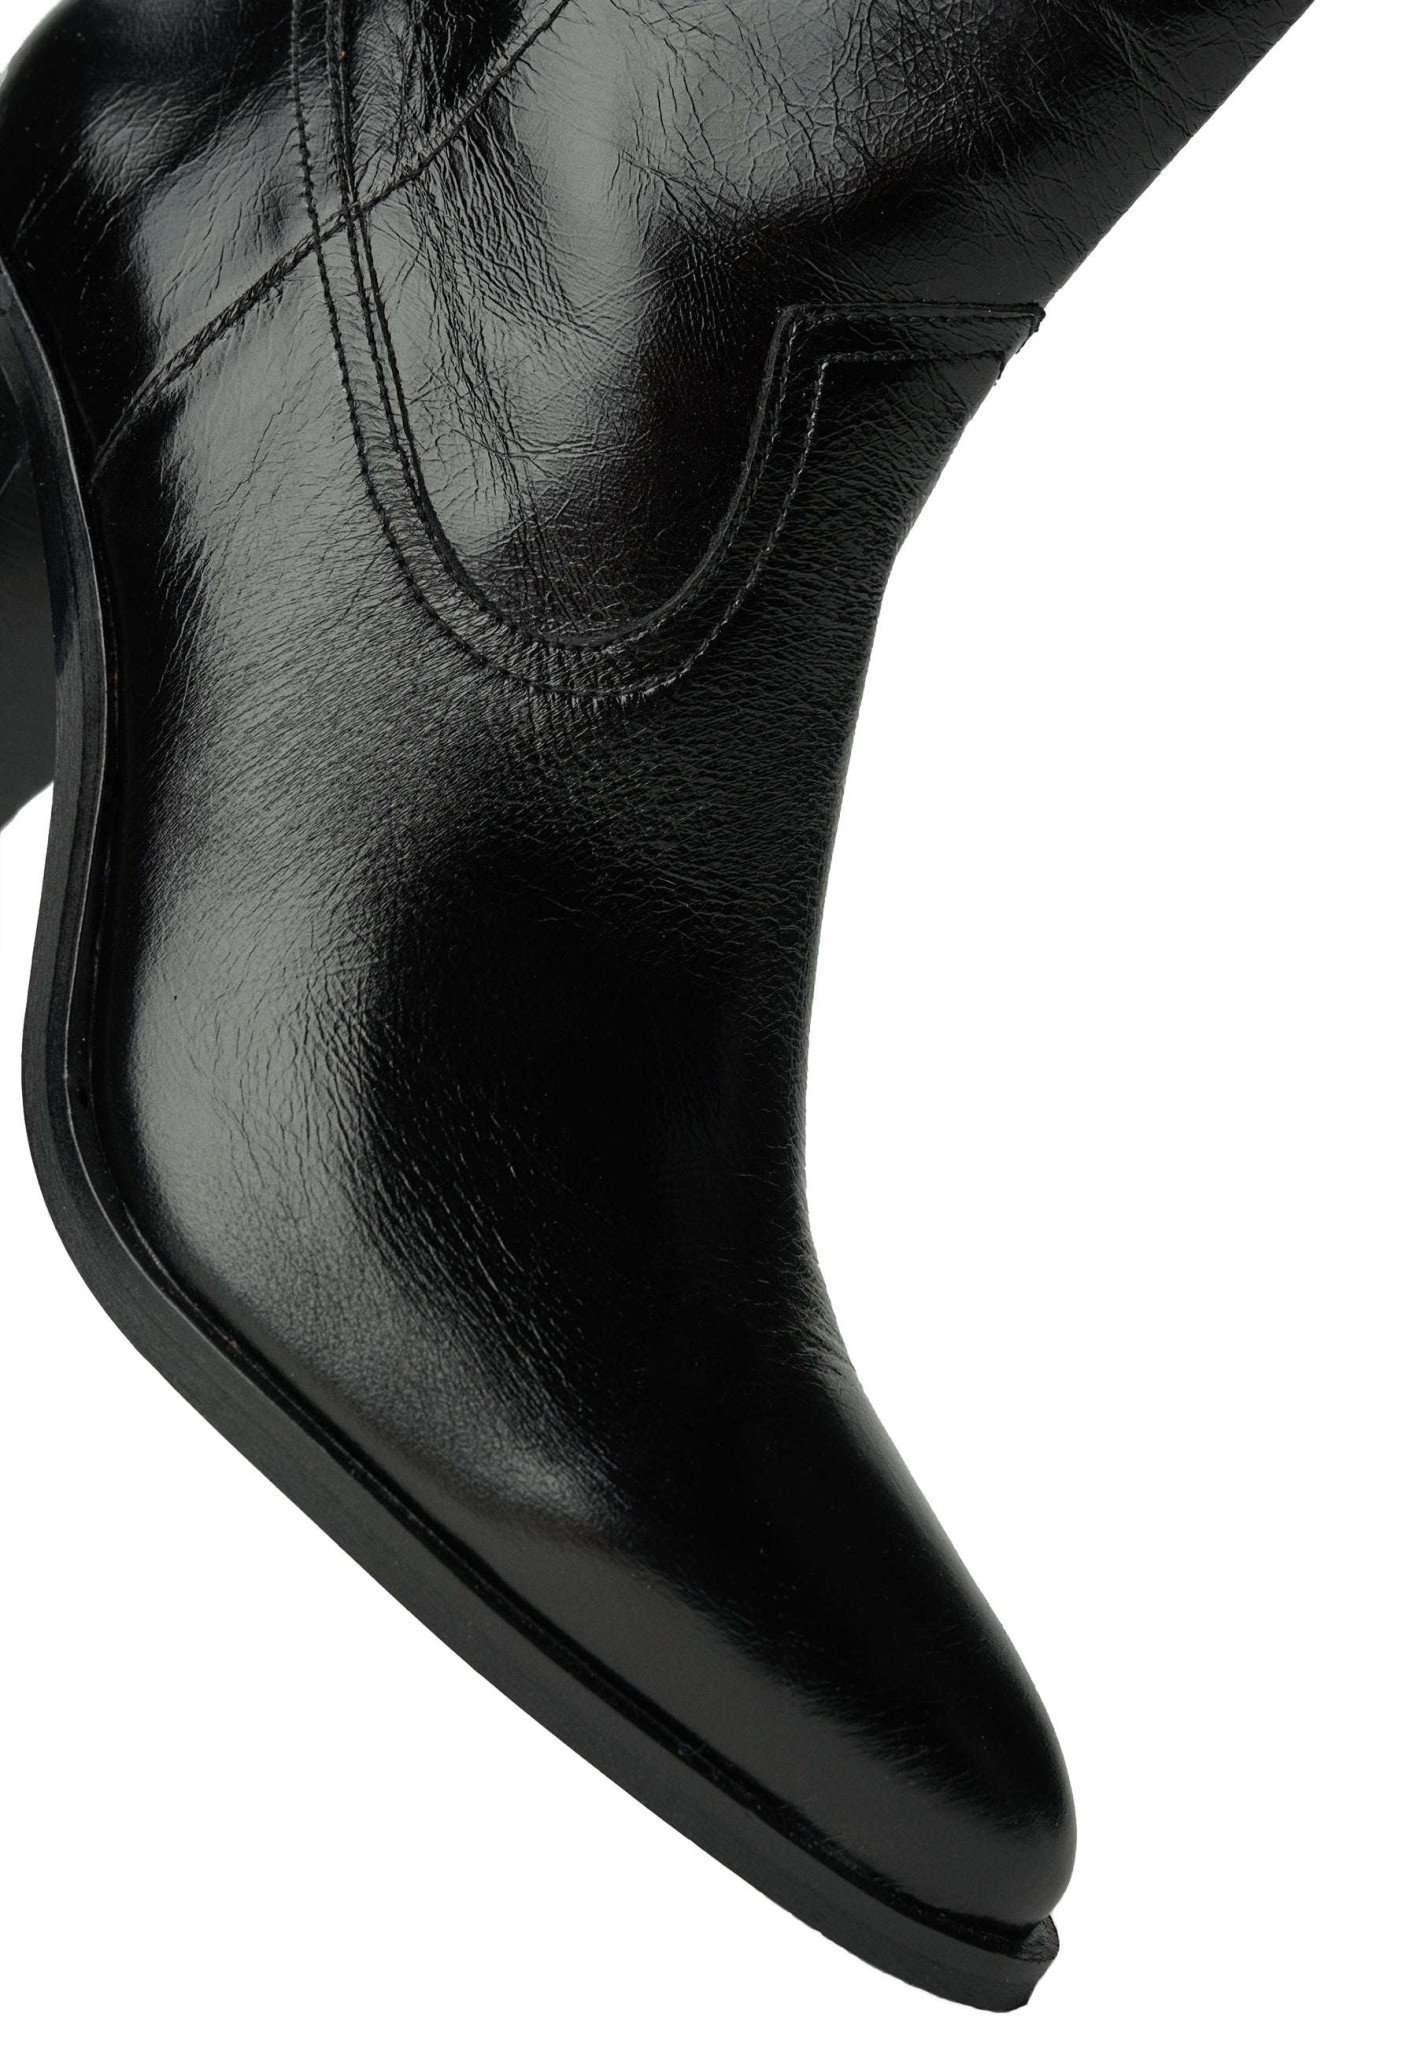 Premium Cowboy Boots in Black Stiefeletten Salsa Jeans   